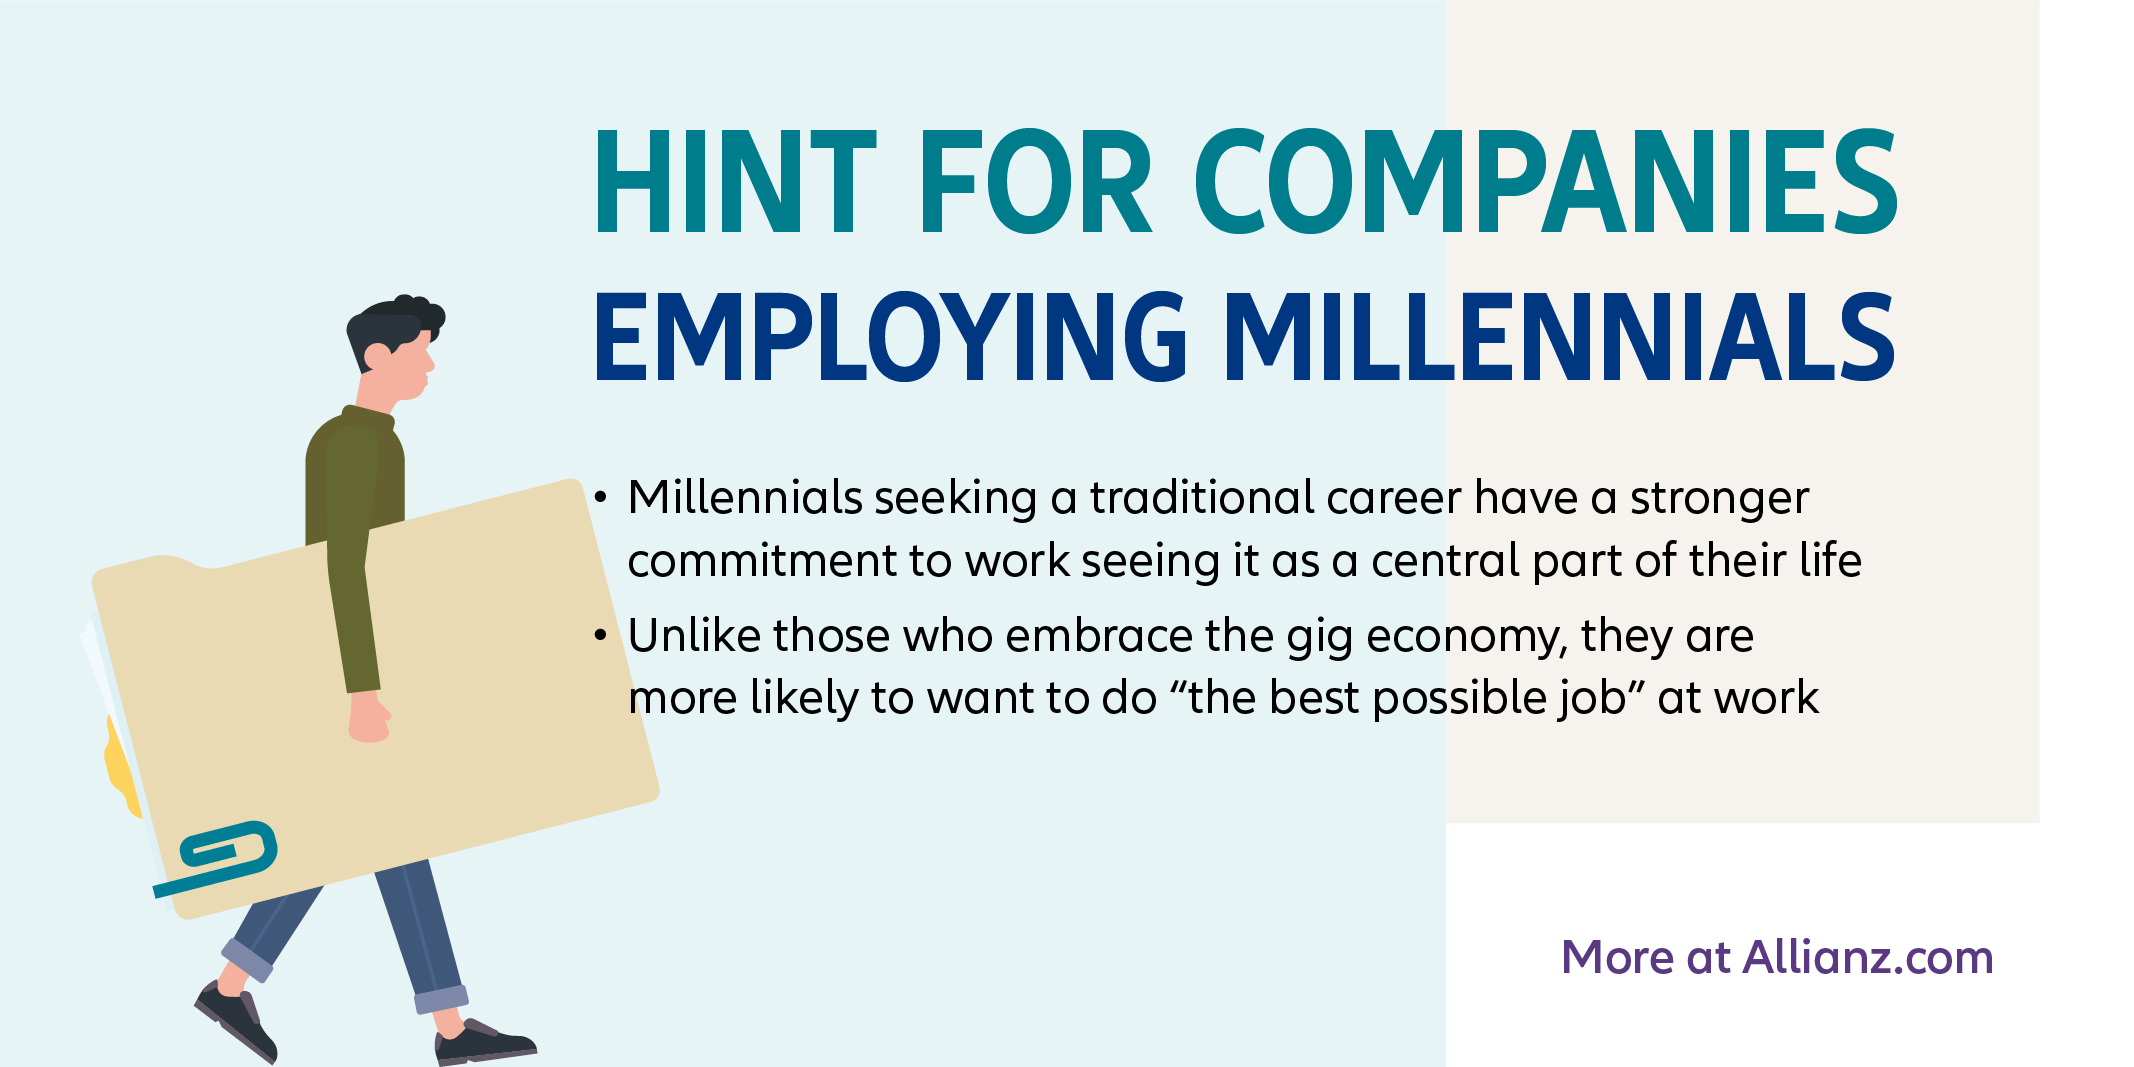 Hint for companies employing millennials